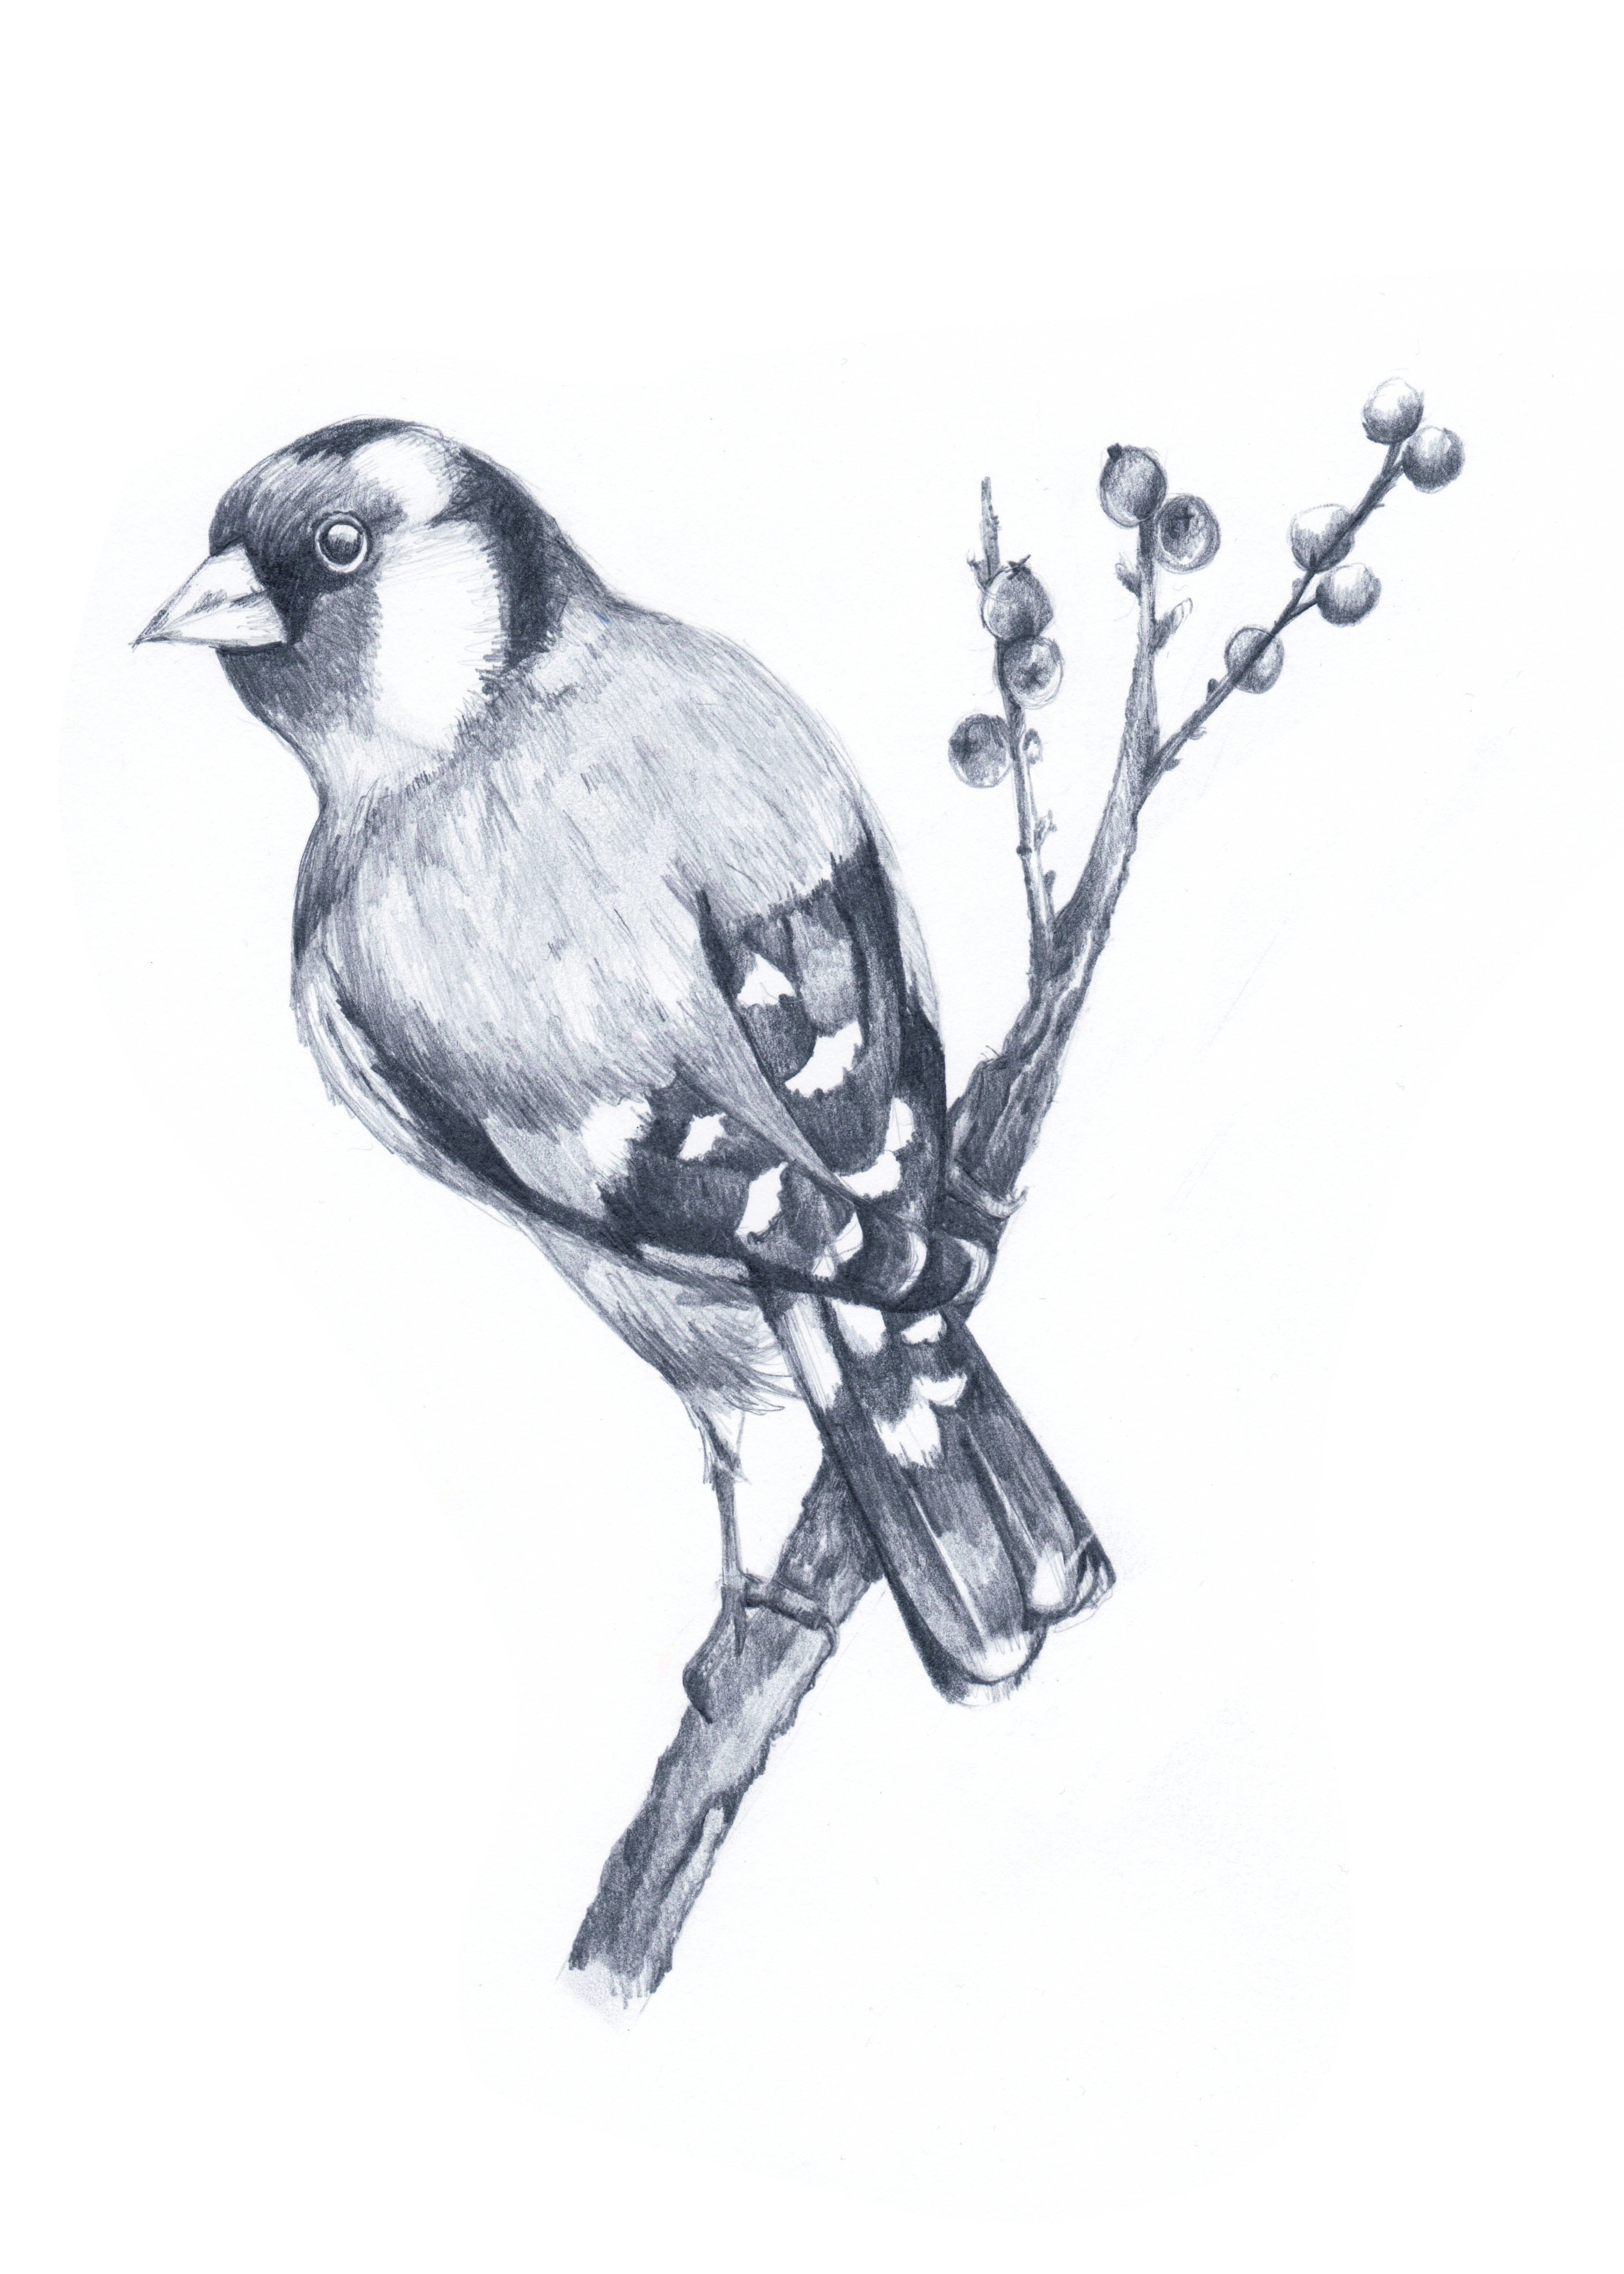 Freehand Pencil Bird Sketch by AbbysArtPortfolio on DeviantArt